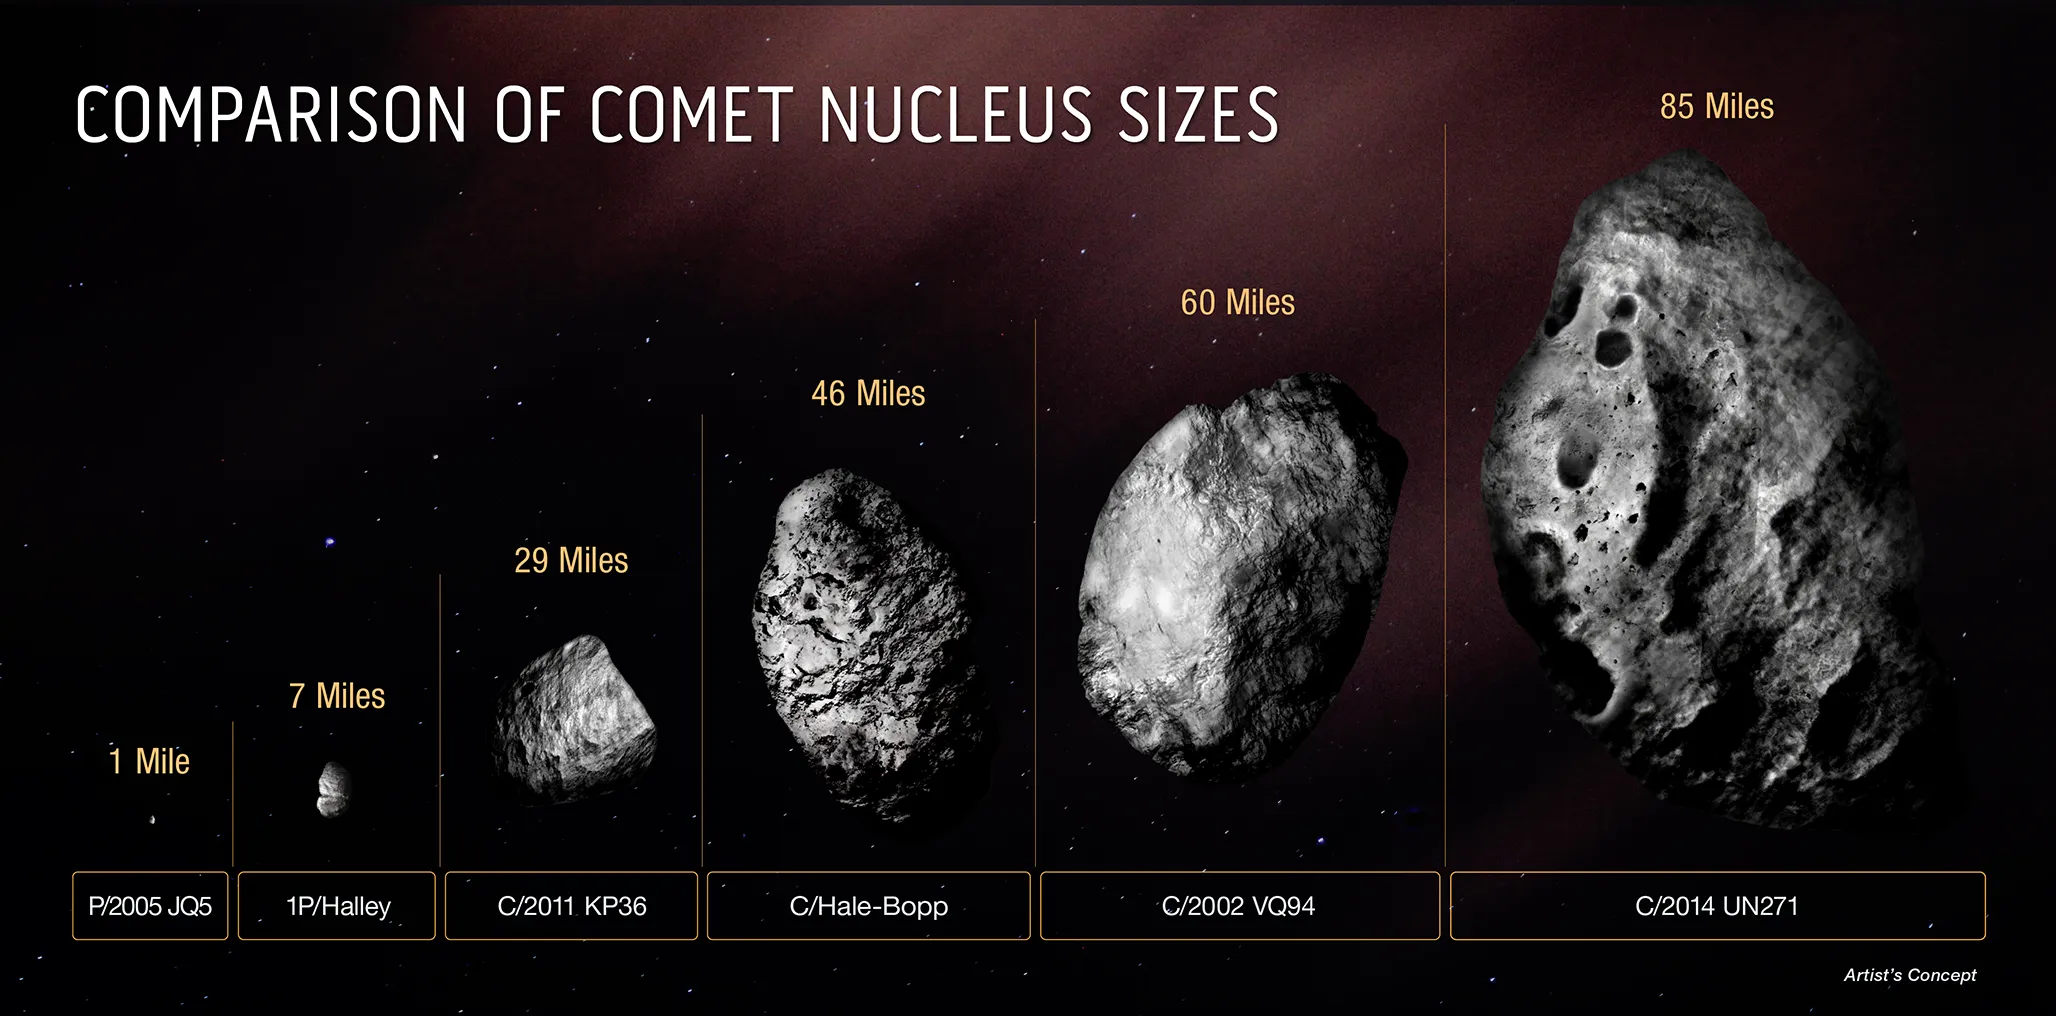 比较C/2014 UN271 (Bernardinelli-Bernstein)彗星与其他几颗彗星的彗核之大小。